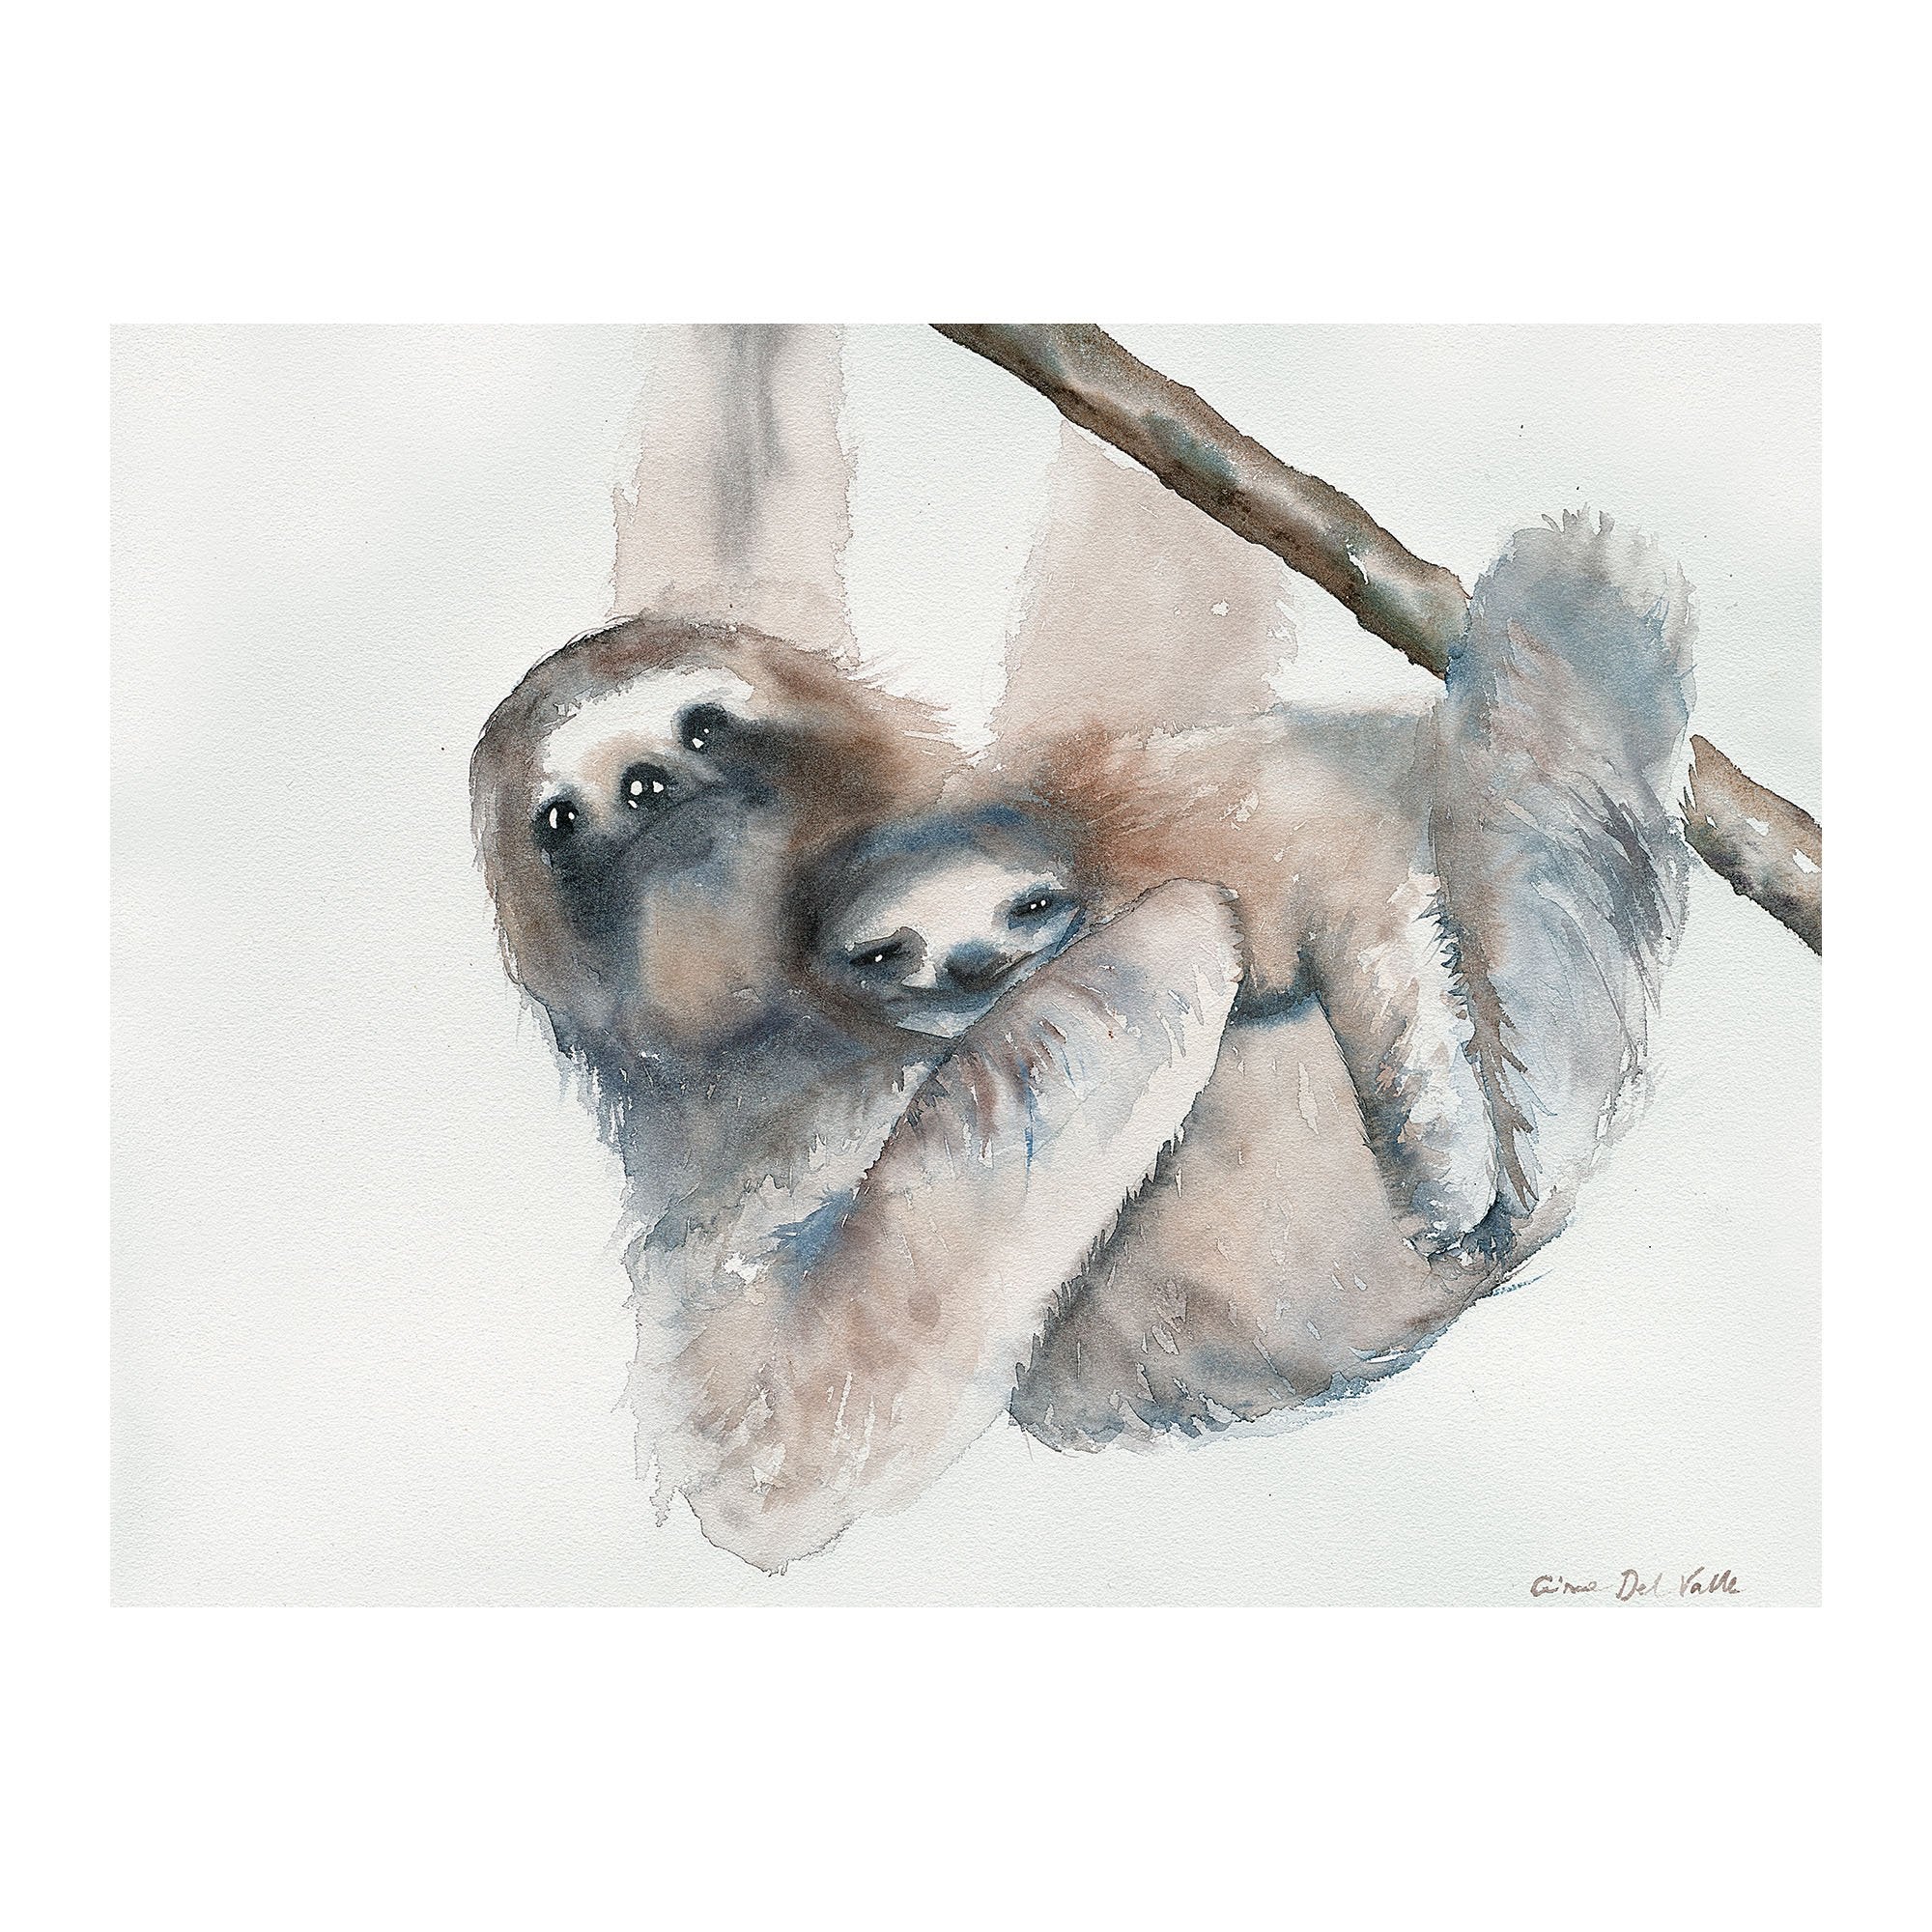 Sloth & Baby Canvas